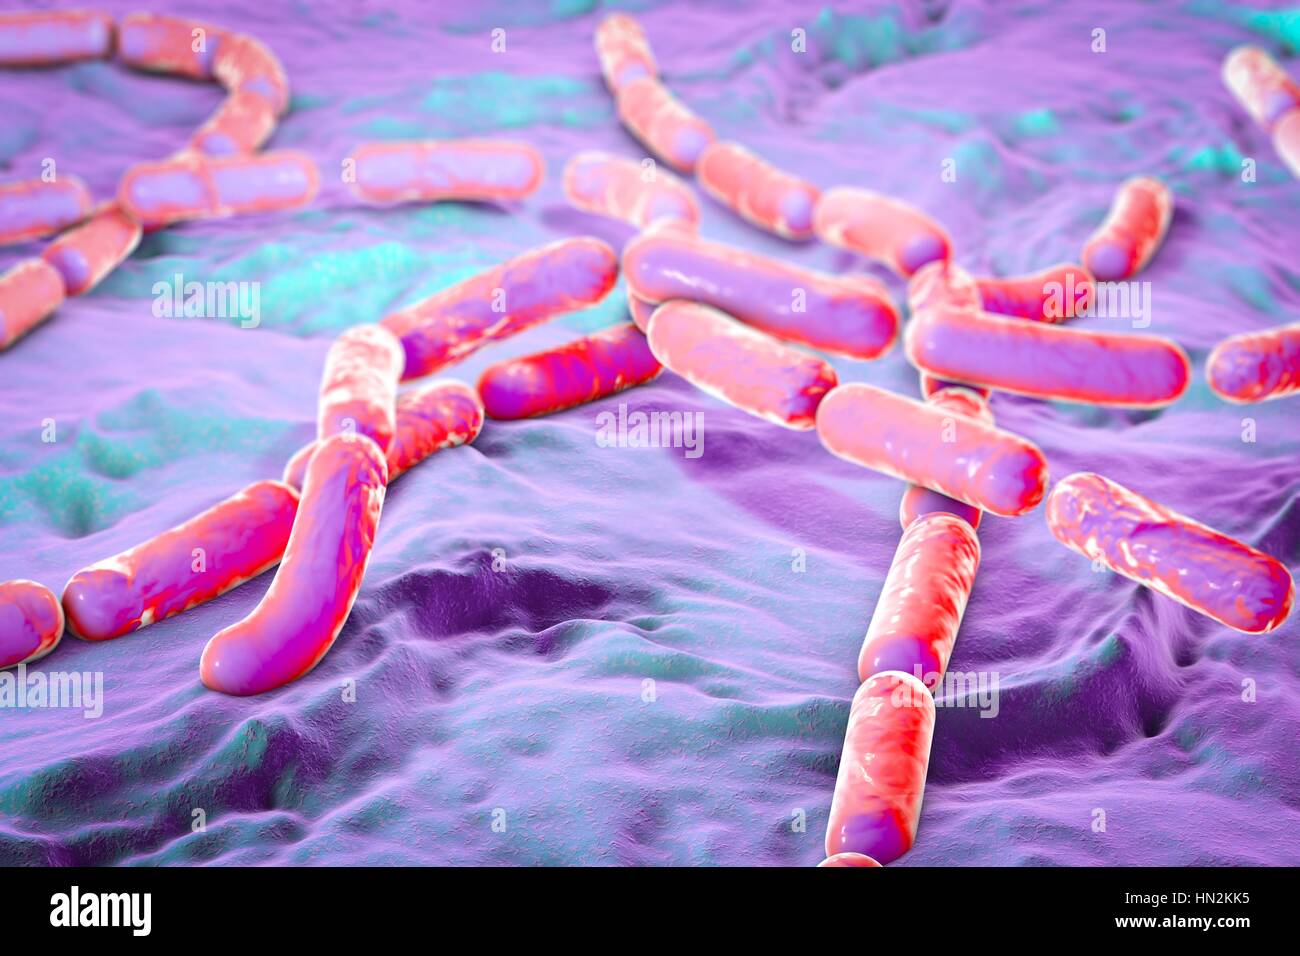 Bactéries Bacillus cereus, illustration de l'ordinateur. Ce sont des bactéries Gram-positives, en forme de tige, les bactéries productrices de spores, qui sont souvent disposés en chaînes (streptobacilli). Certaines souches peuvent causer des empoisonnements alimentaires. Banque D'Images